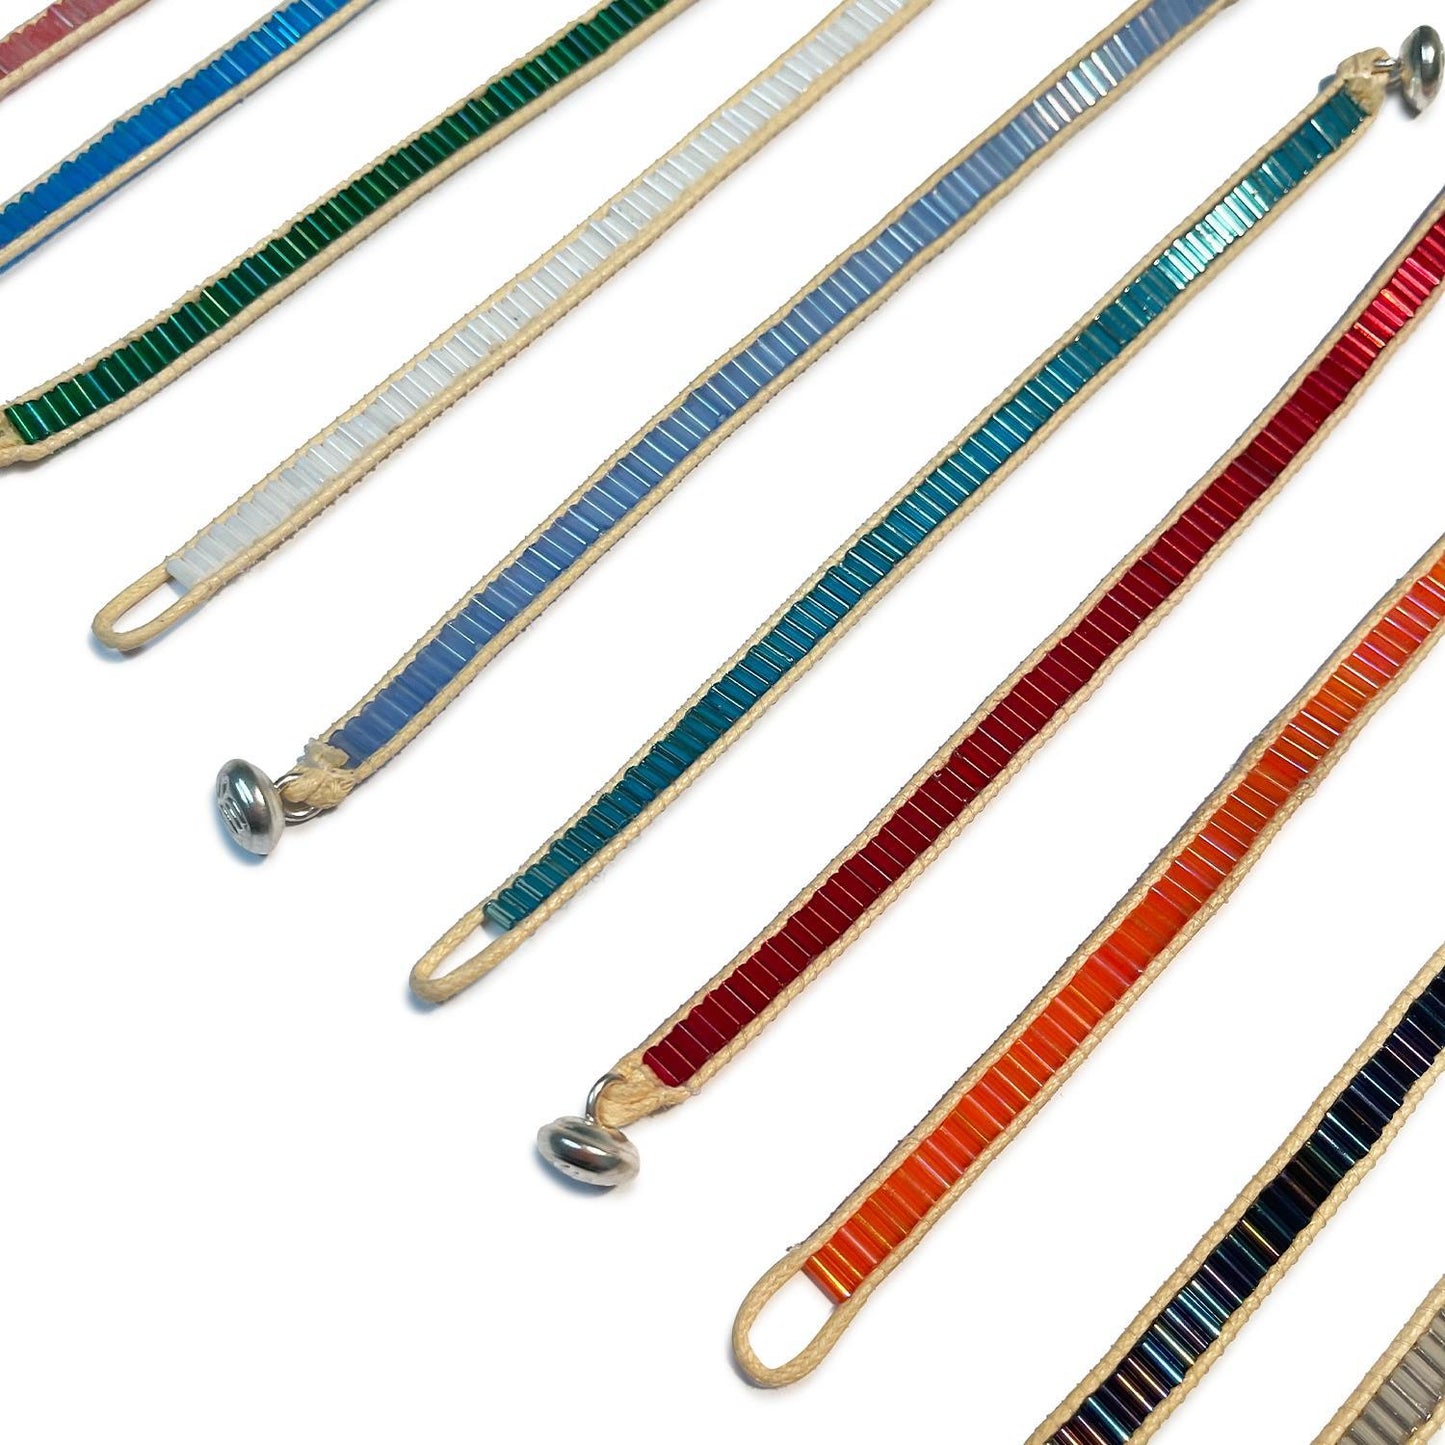 Color Bar Bead Bracelets: Solids (Multiple Colors Available)